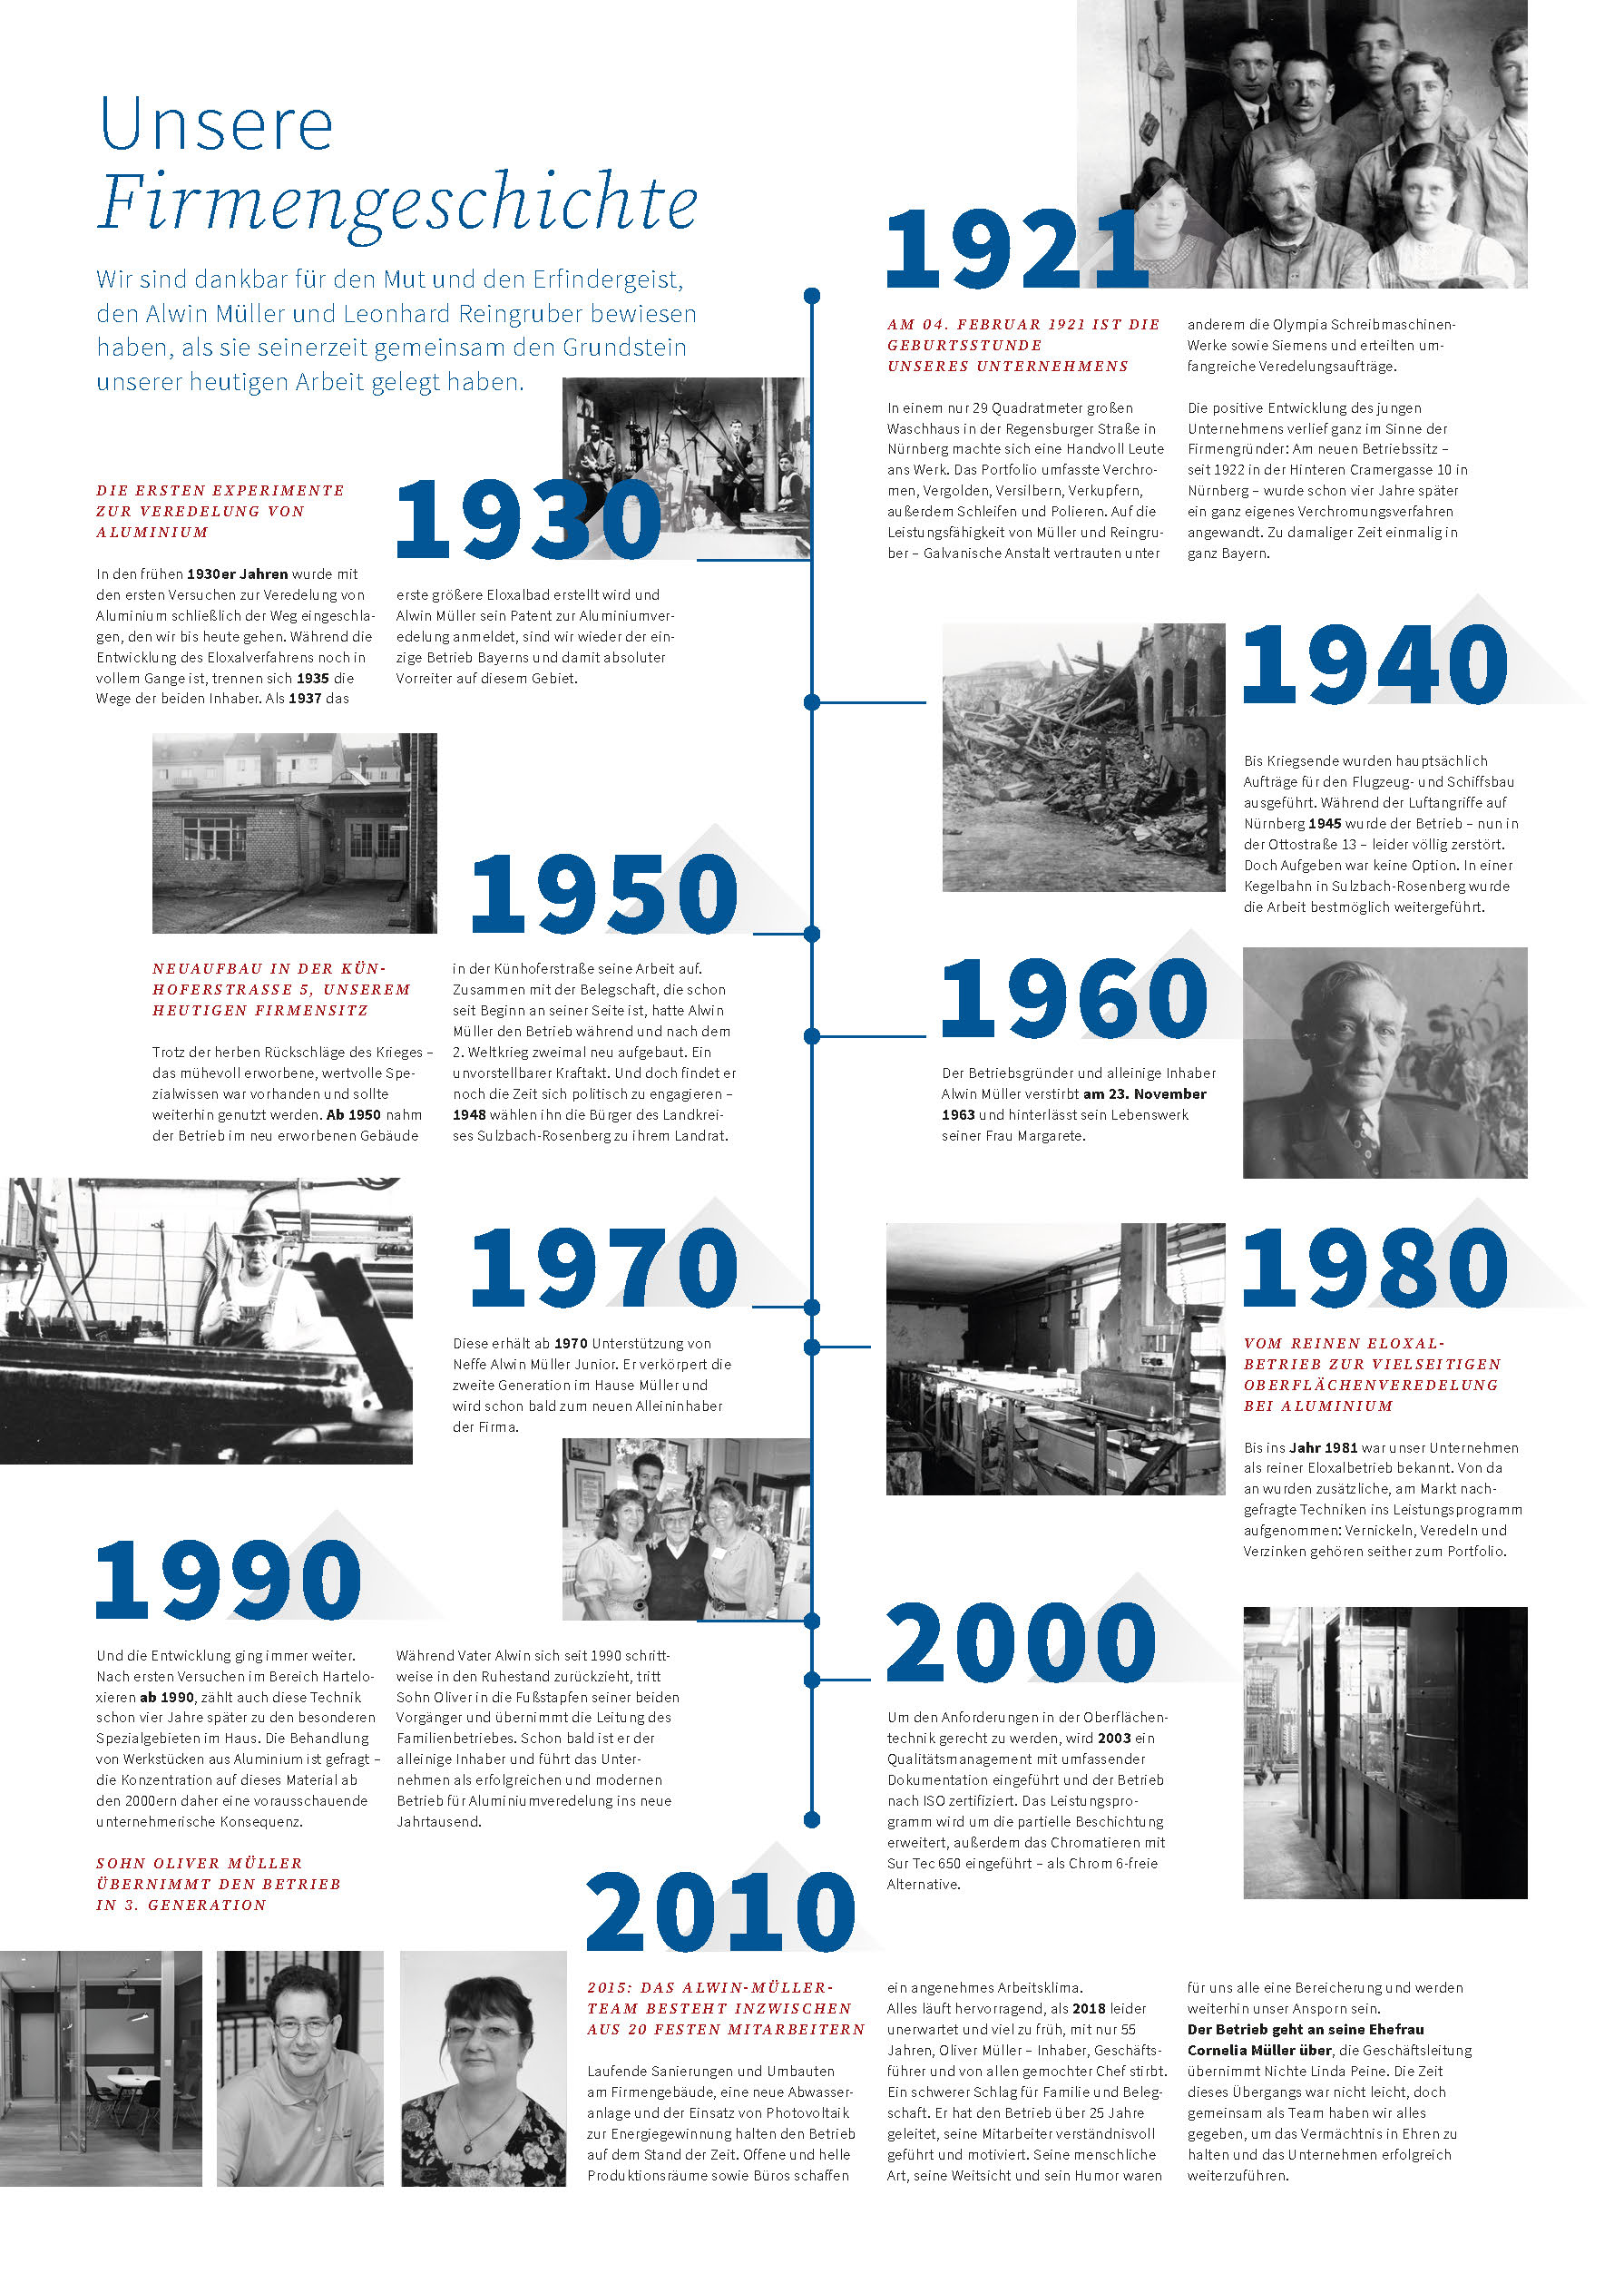 Firmengeschichte von 1921-2010